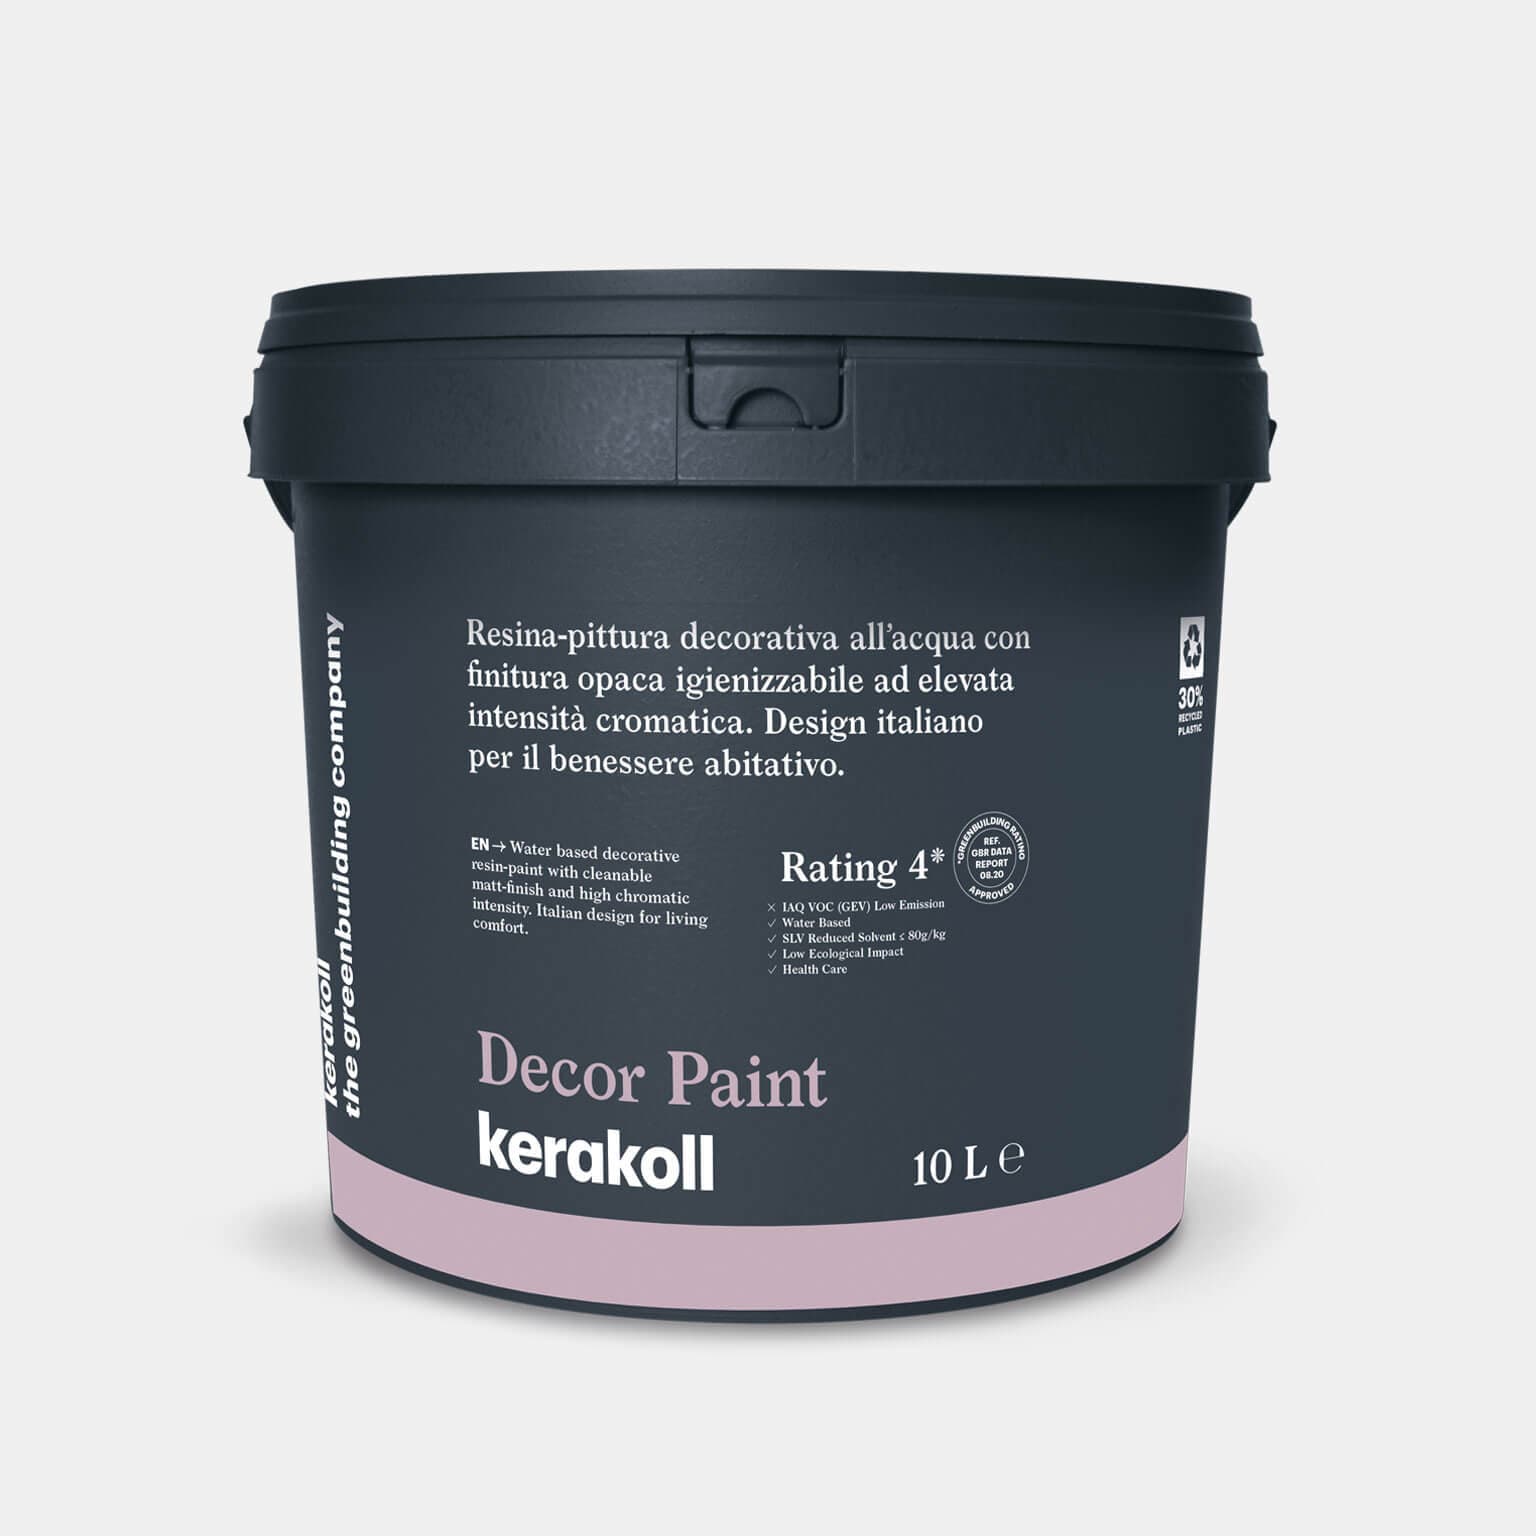 Kerakoll Decor Paint Color Collection